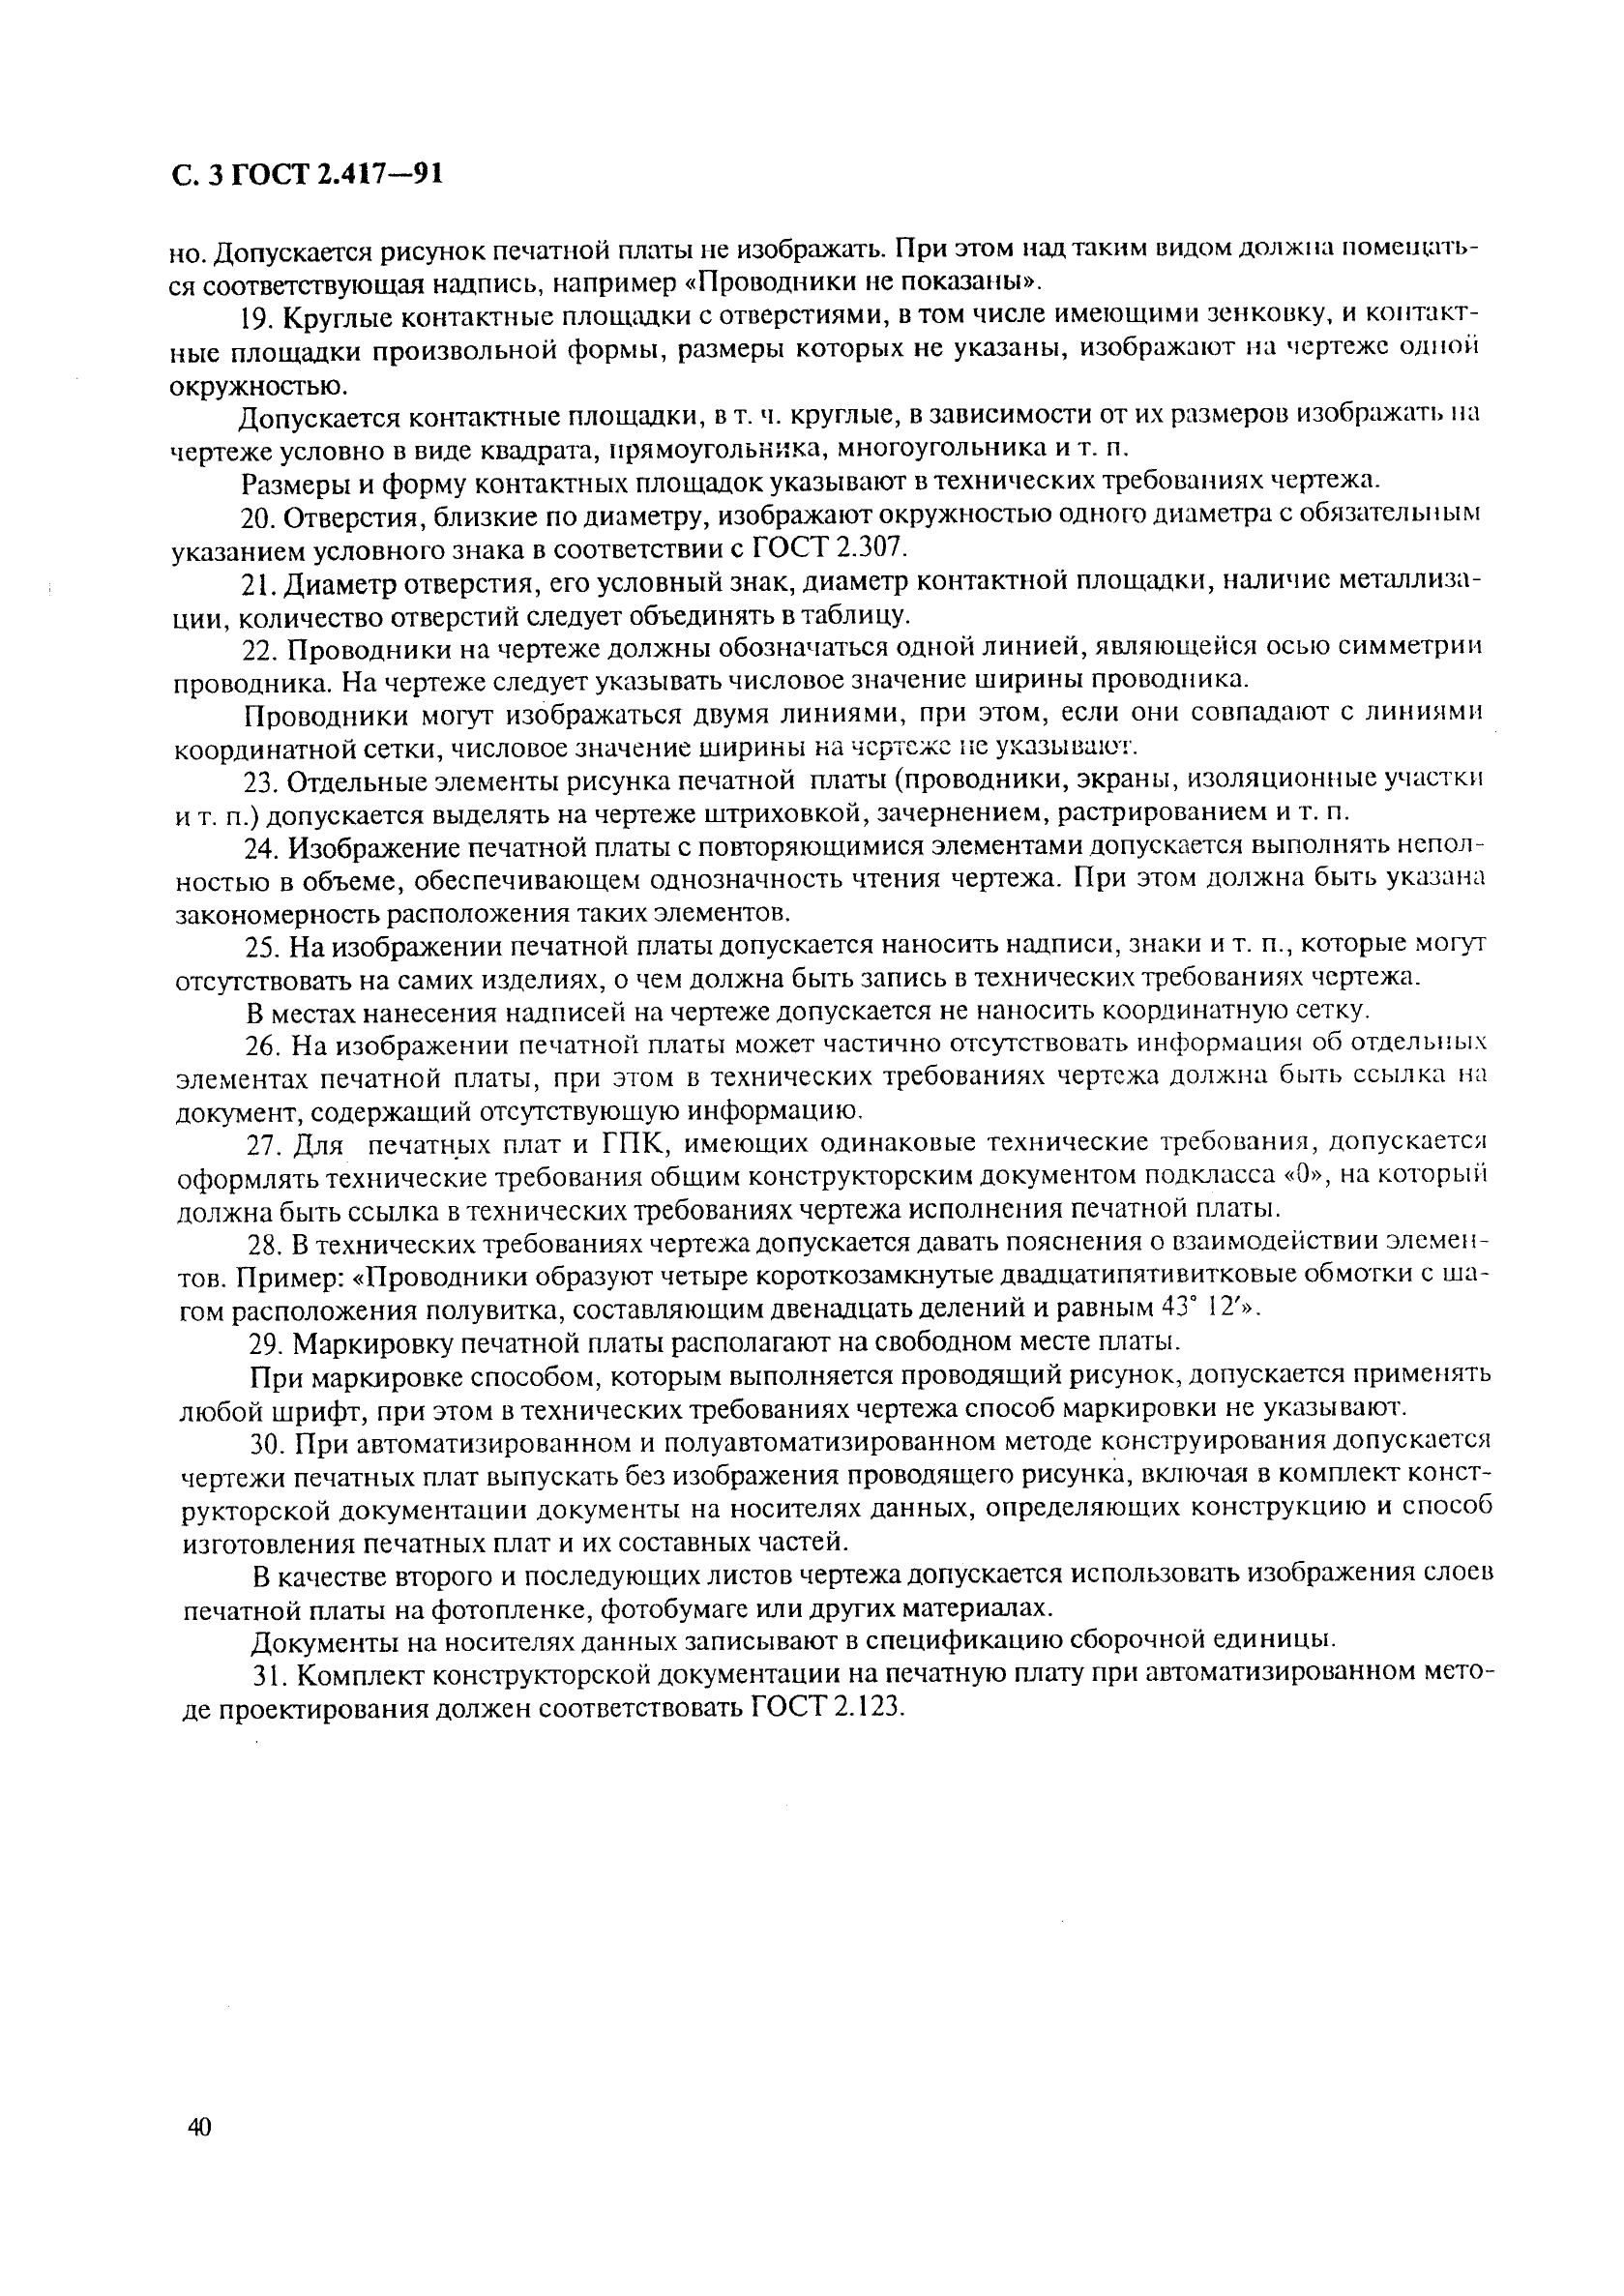 ГОСТ 2.417-91 Единая система конструкторской документации. Платы печатные. Правила выполнения чертежей (фото 3 из 4)